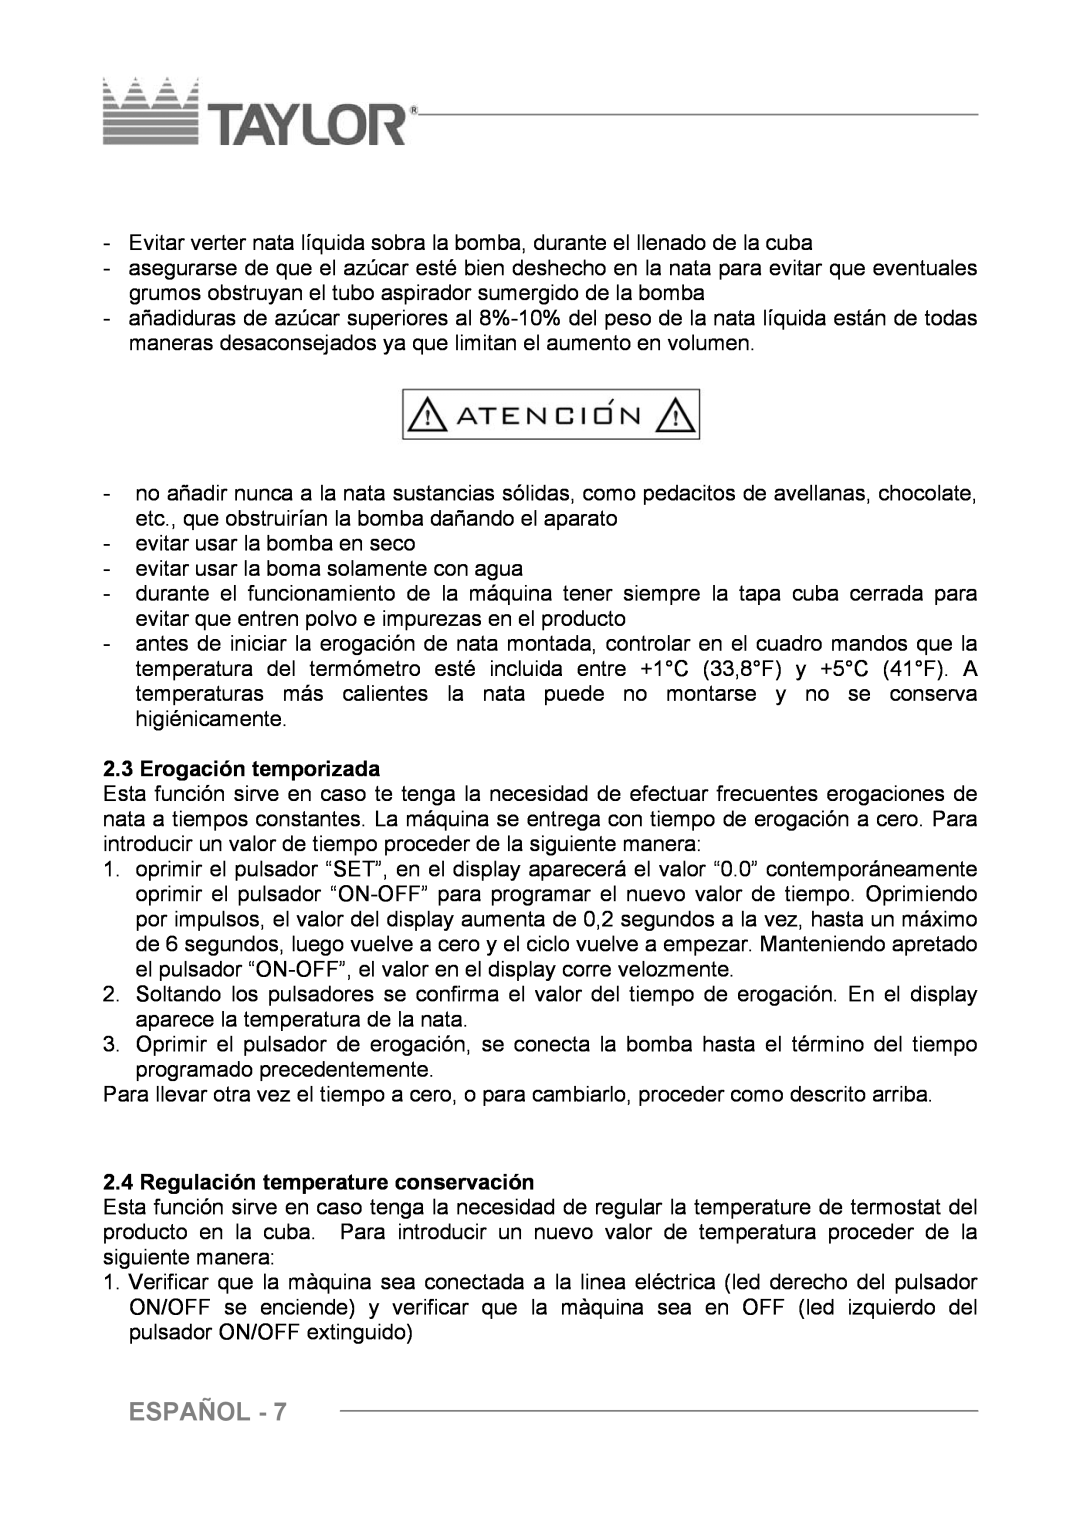 Taylor C004 - C007 manuel dutilisation Español, Erogación temporizada, Regulación temperature conservación 